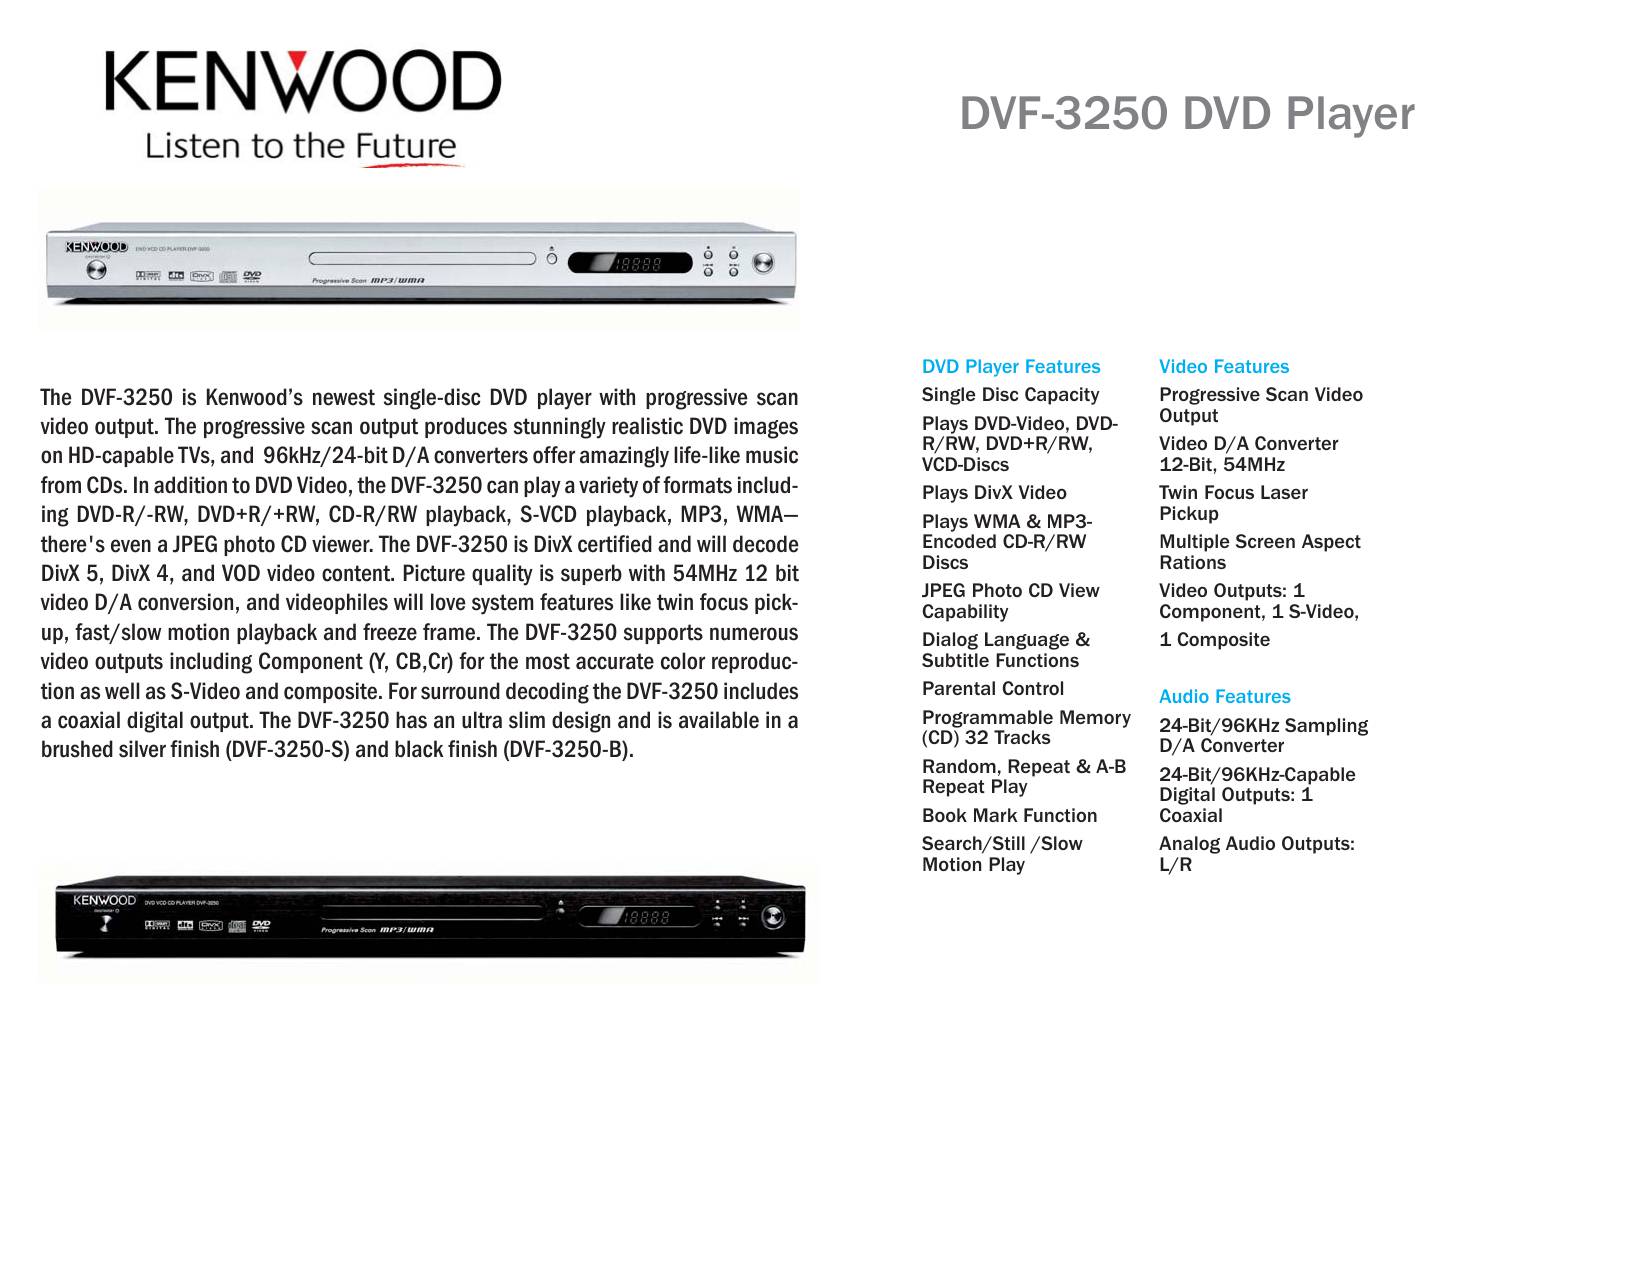 Kenwood DVF-3250